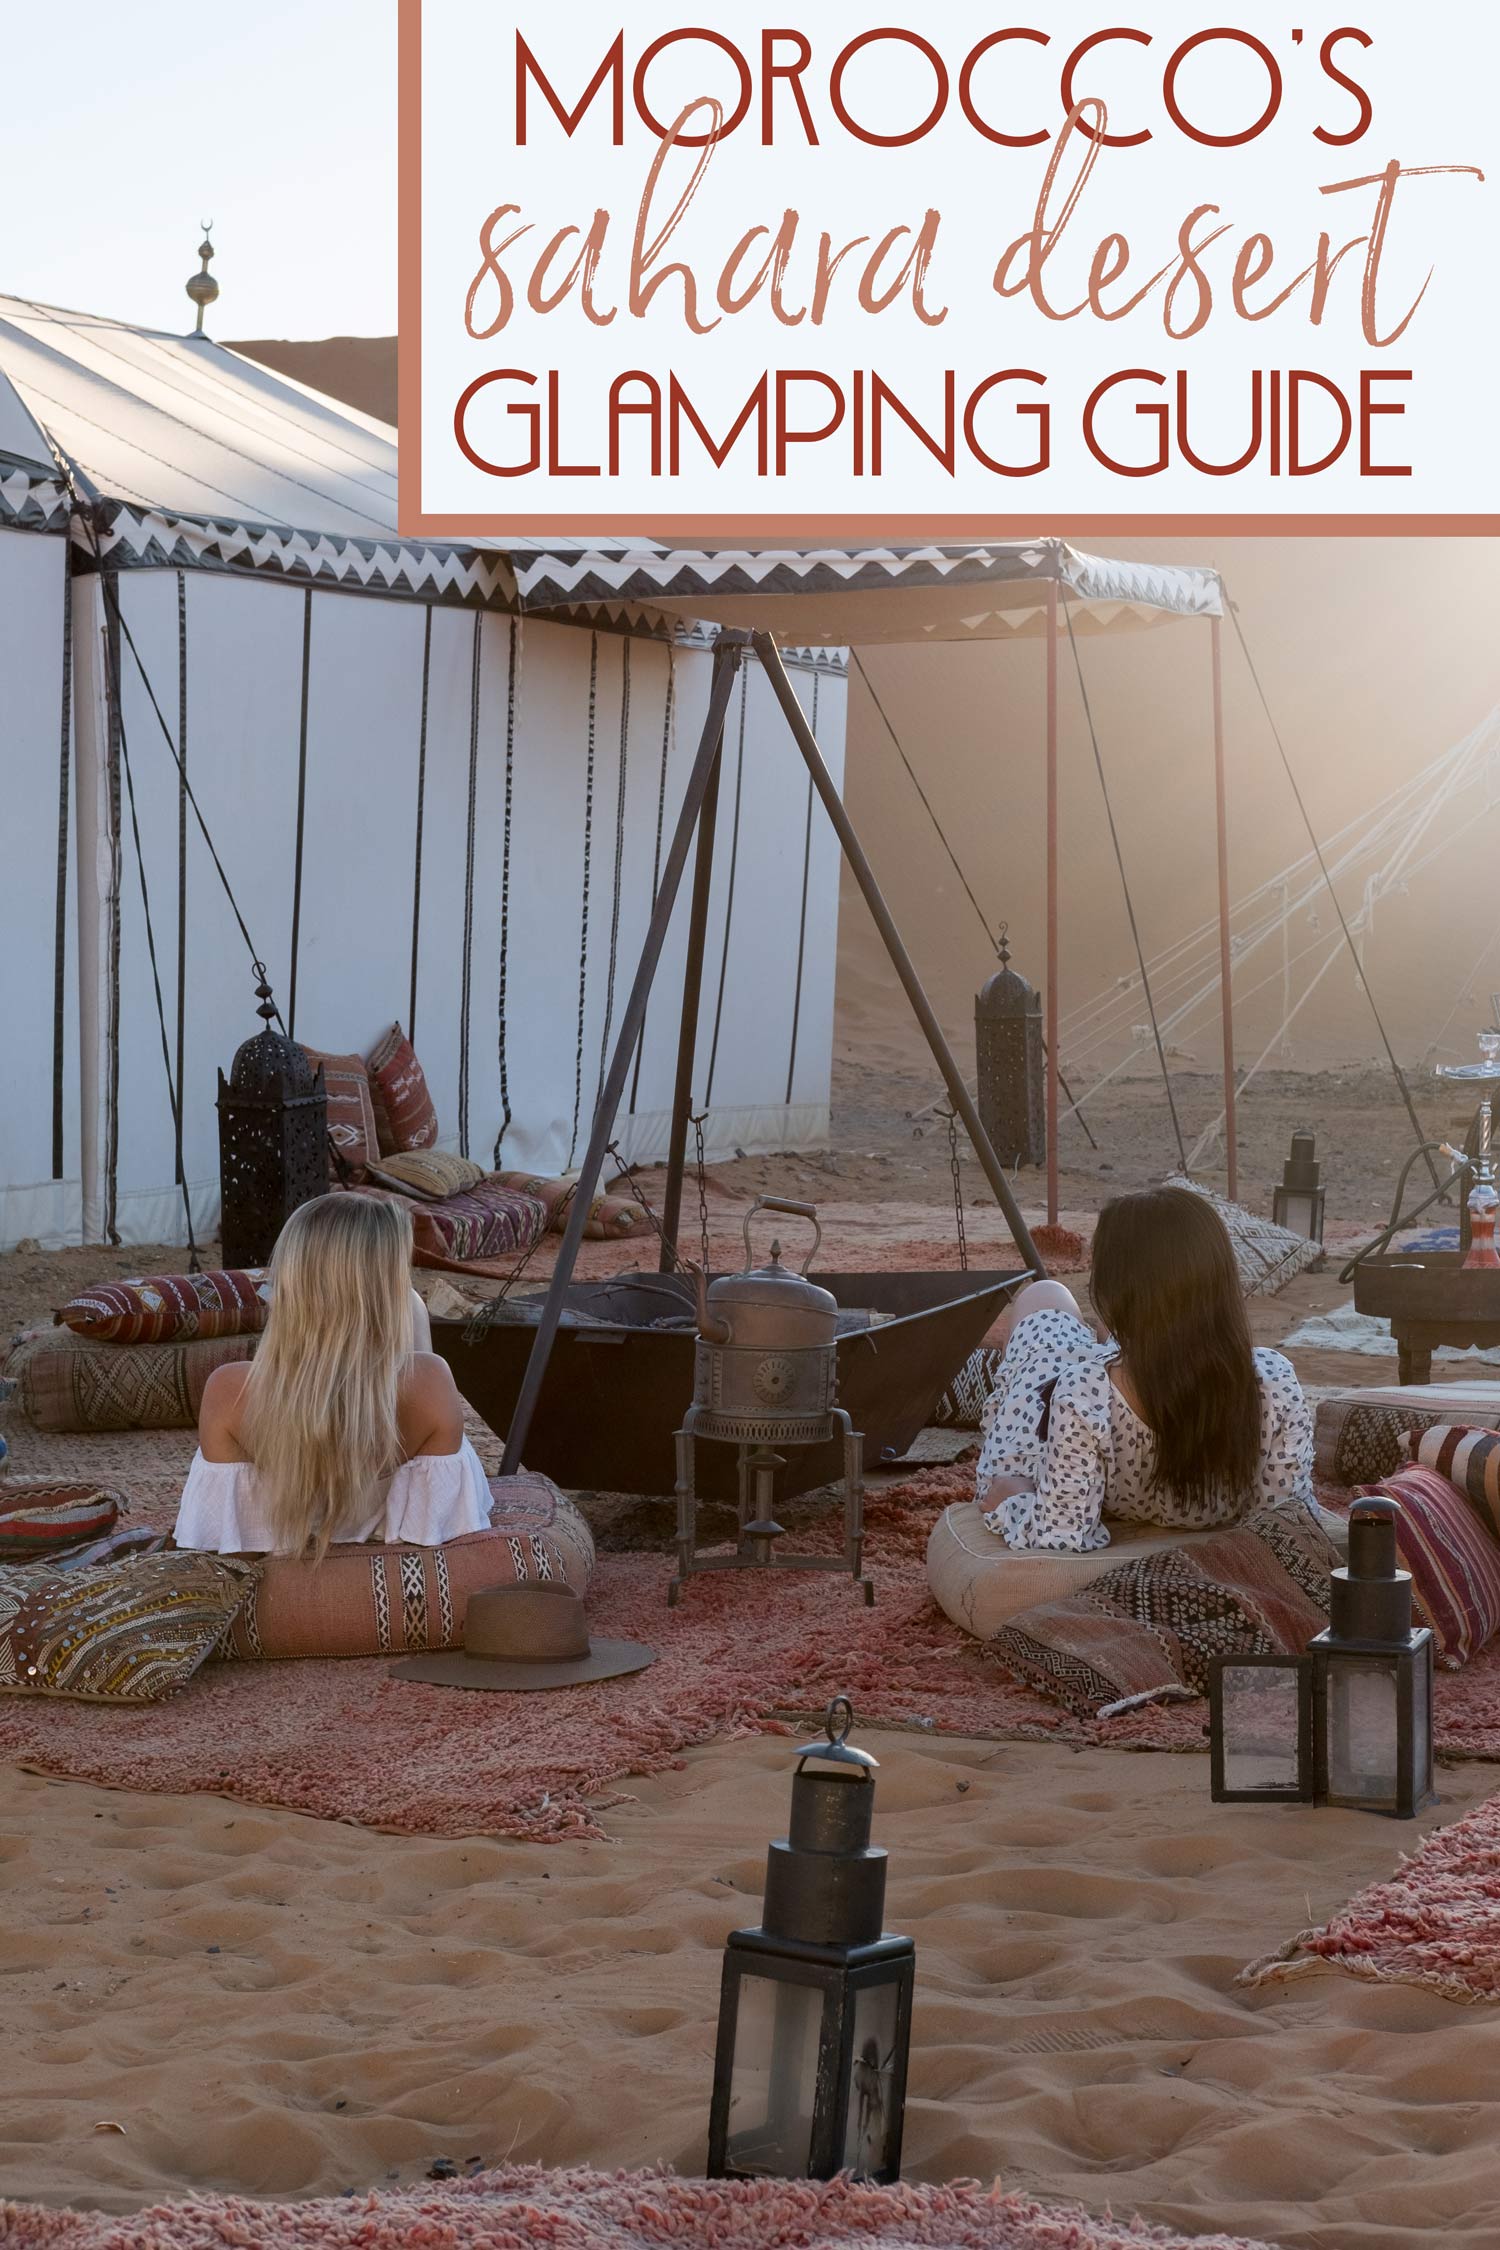 Morocco's Sahara Desert Glamping Guide